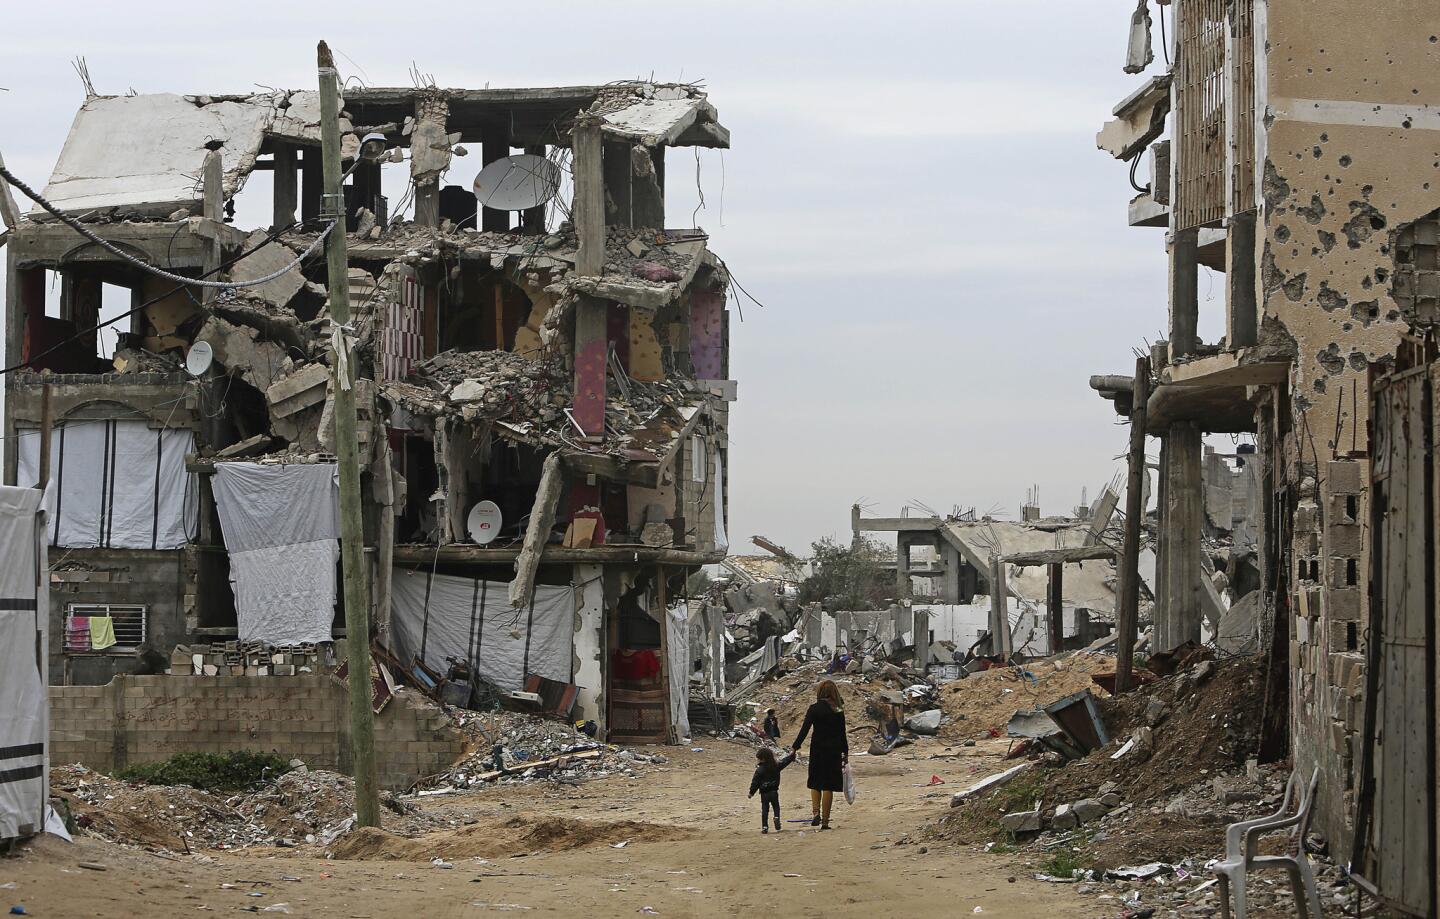 Gaza in ruins